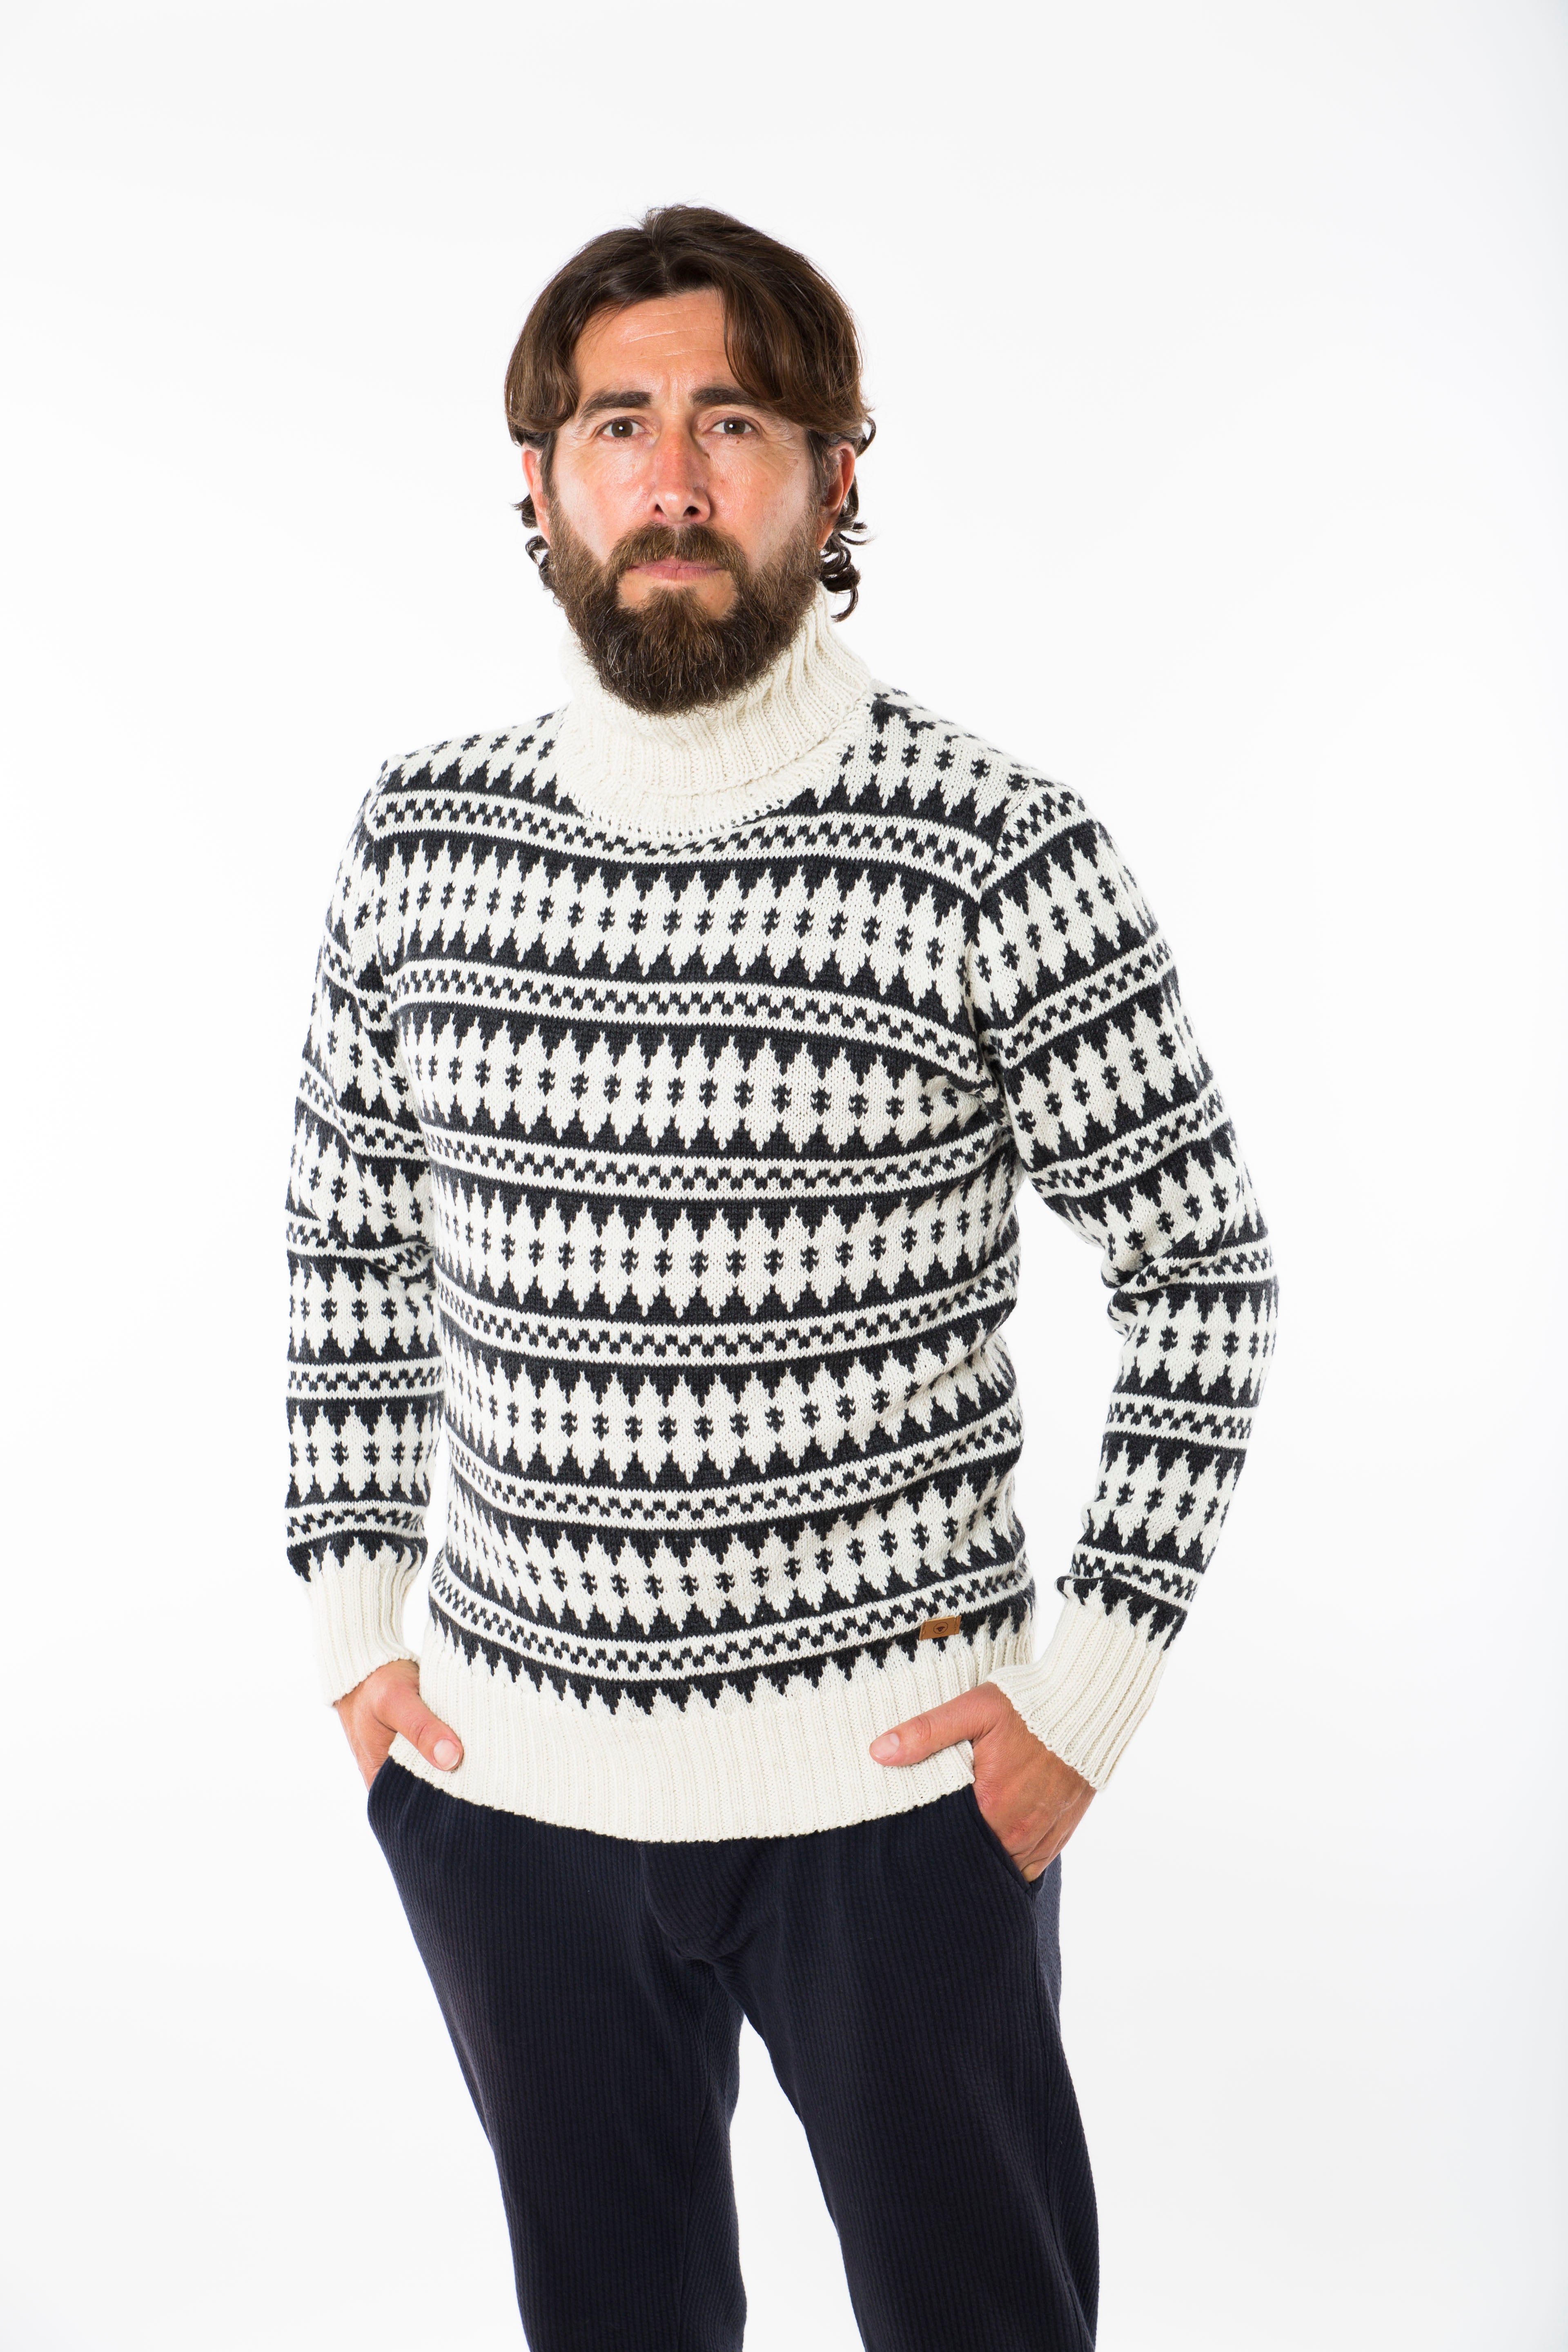 Se Gorm Sweater High Neck - Fuza Wool - Coal/white hos Fuza Wool